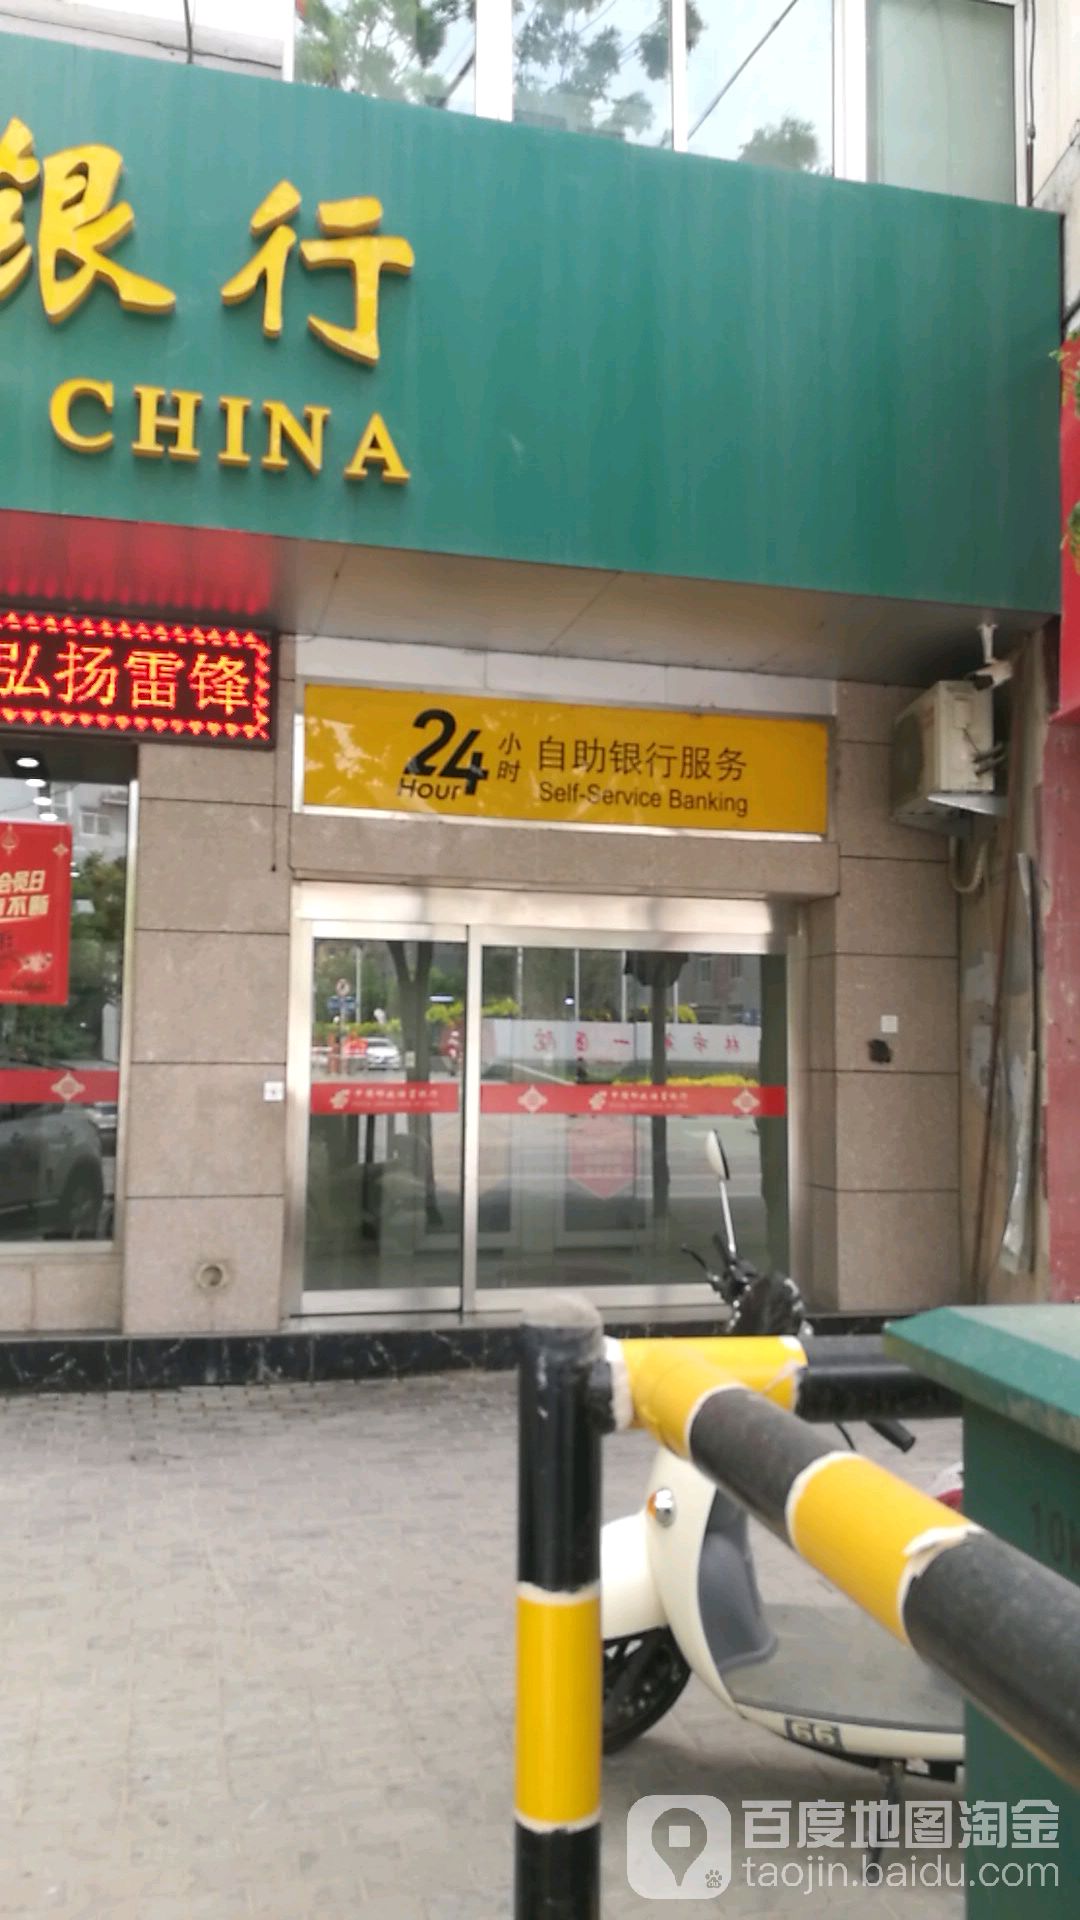 中國郵政儲蓄銀行24小時自助銀行(郵政儲蓄)